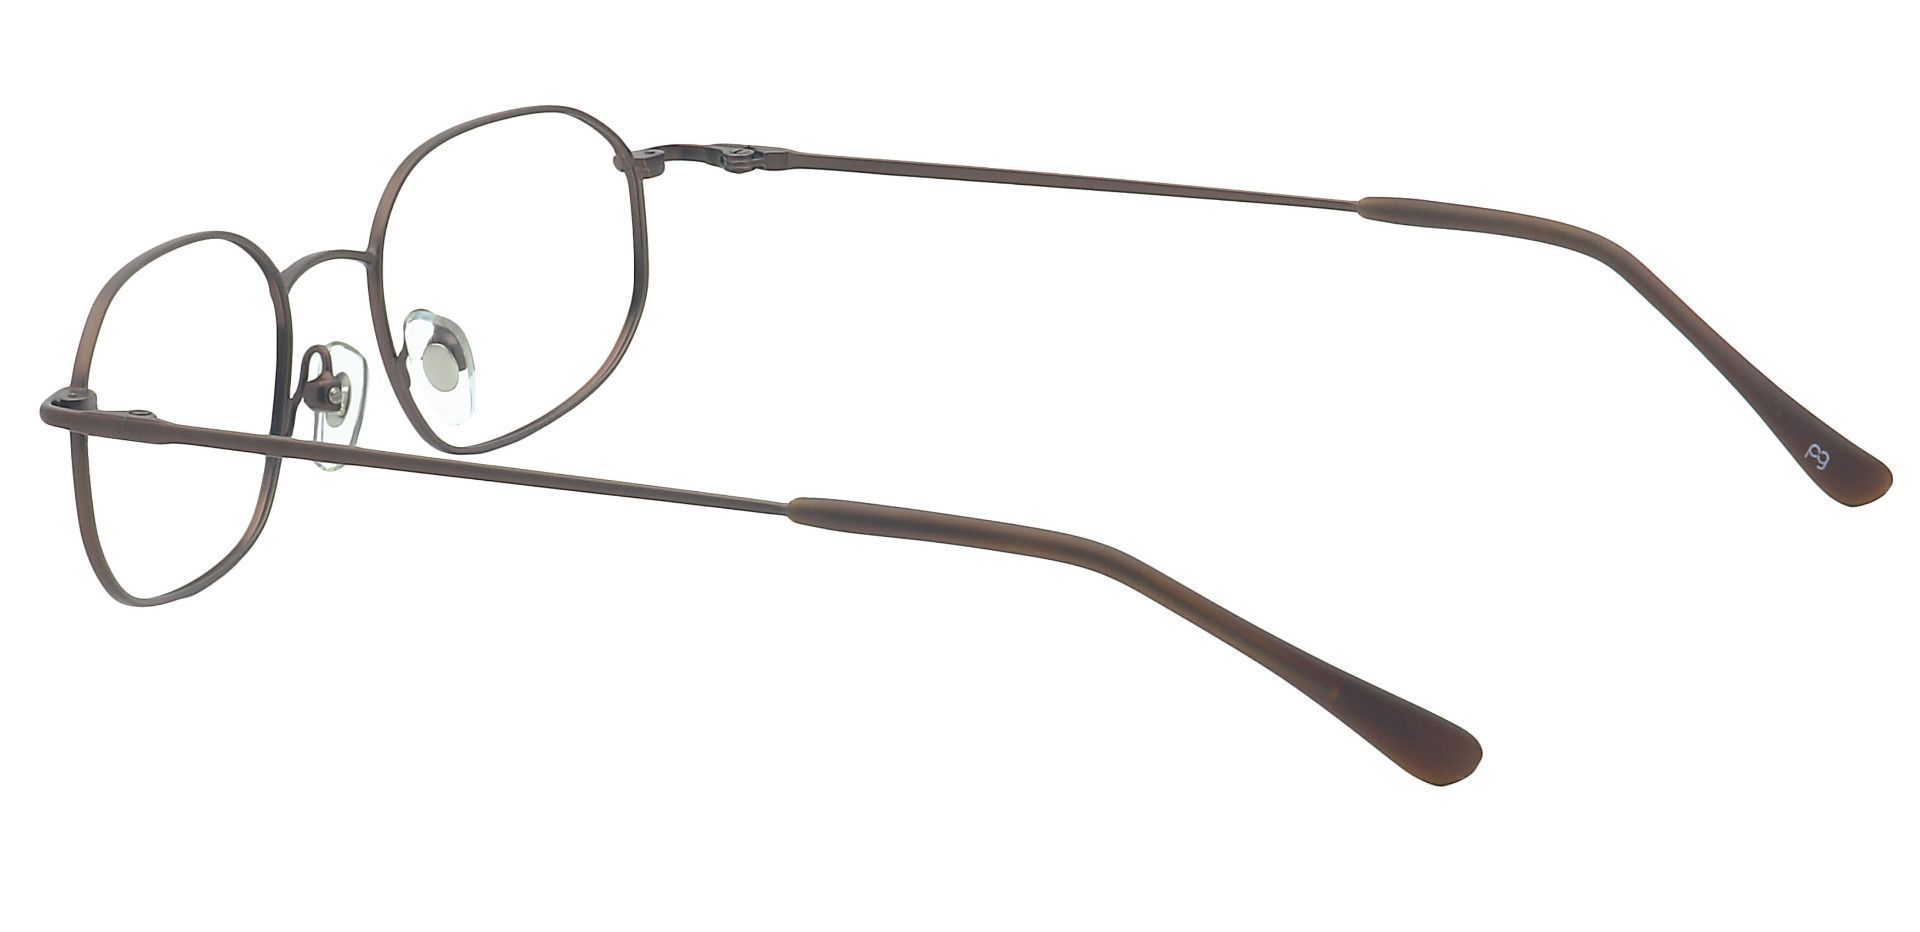 Parker Oval Eyeglasses Frame - Brown